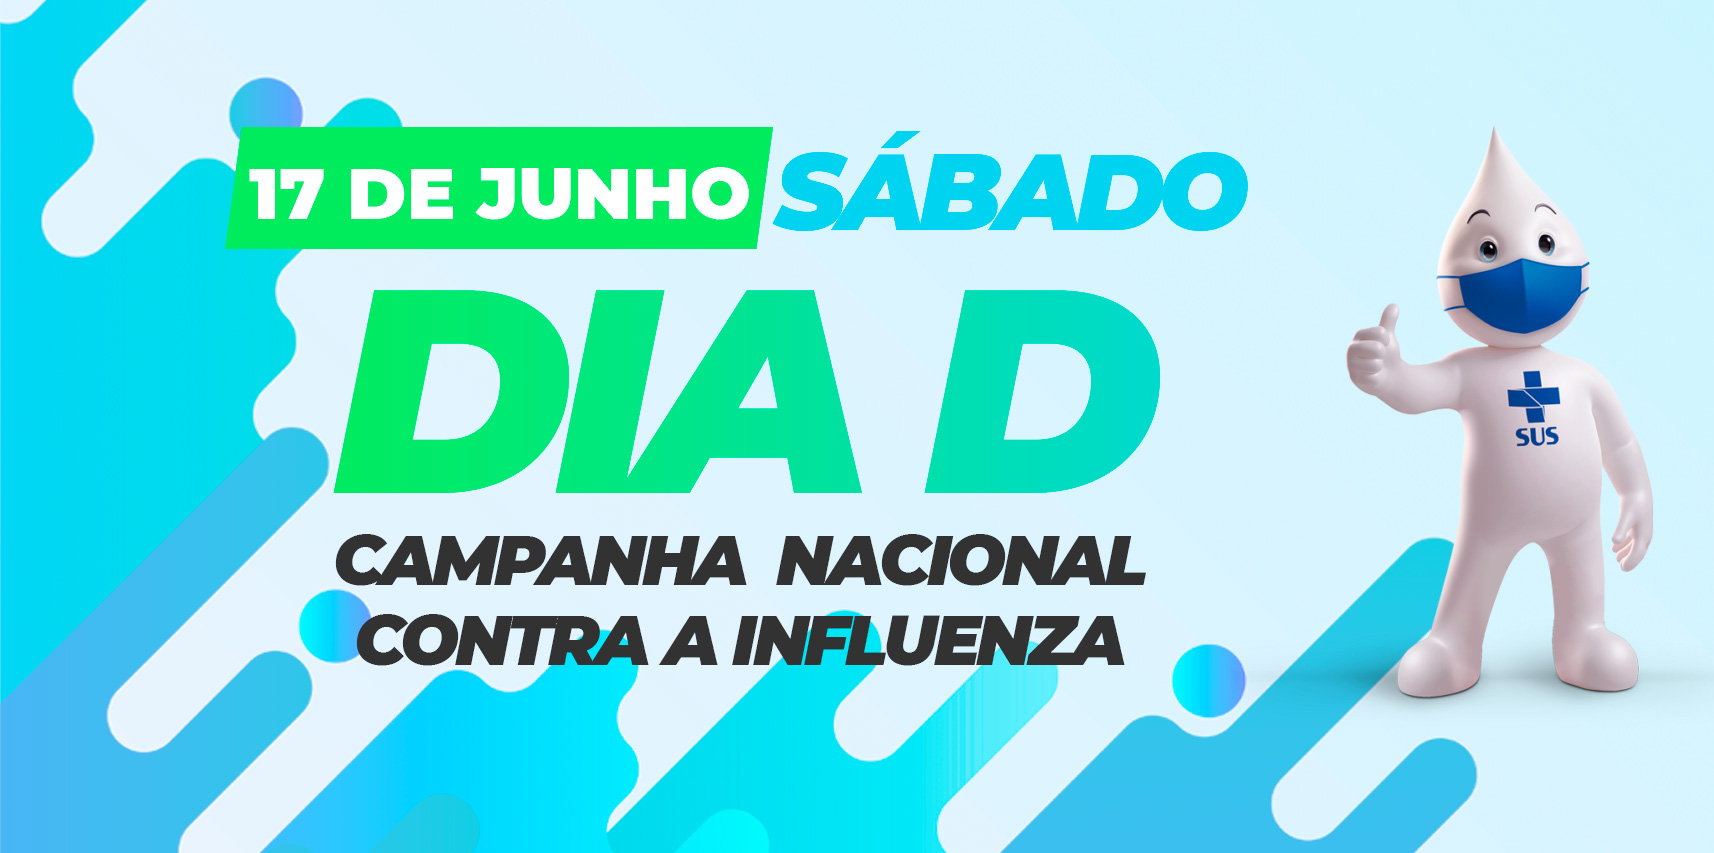 Dia D da Campanha Nacional Contra a Influenza mobiliza população para vacinação em Vargem Alta neste sábado (17)